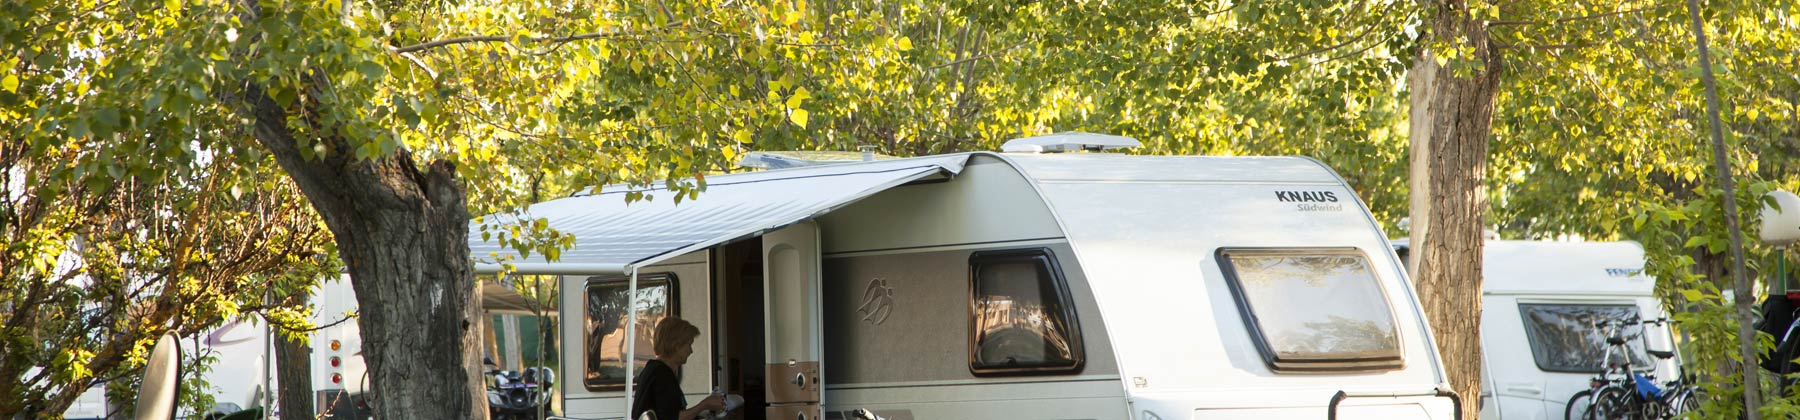 Bungalows y Mobil Homes Camping Regio  header